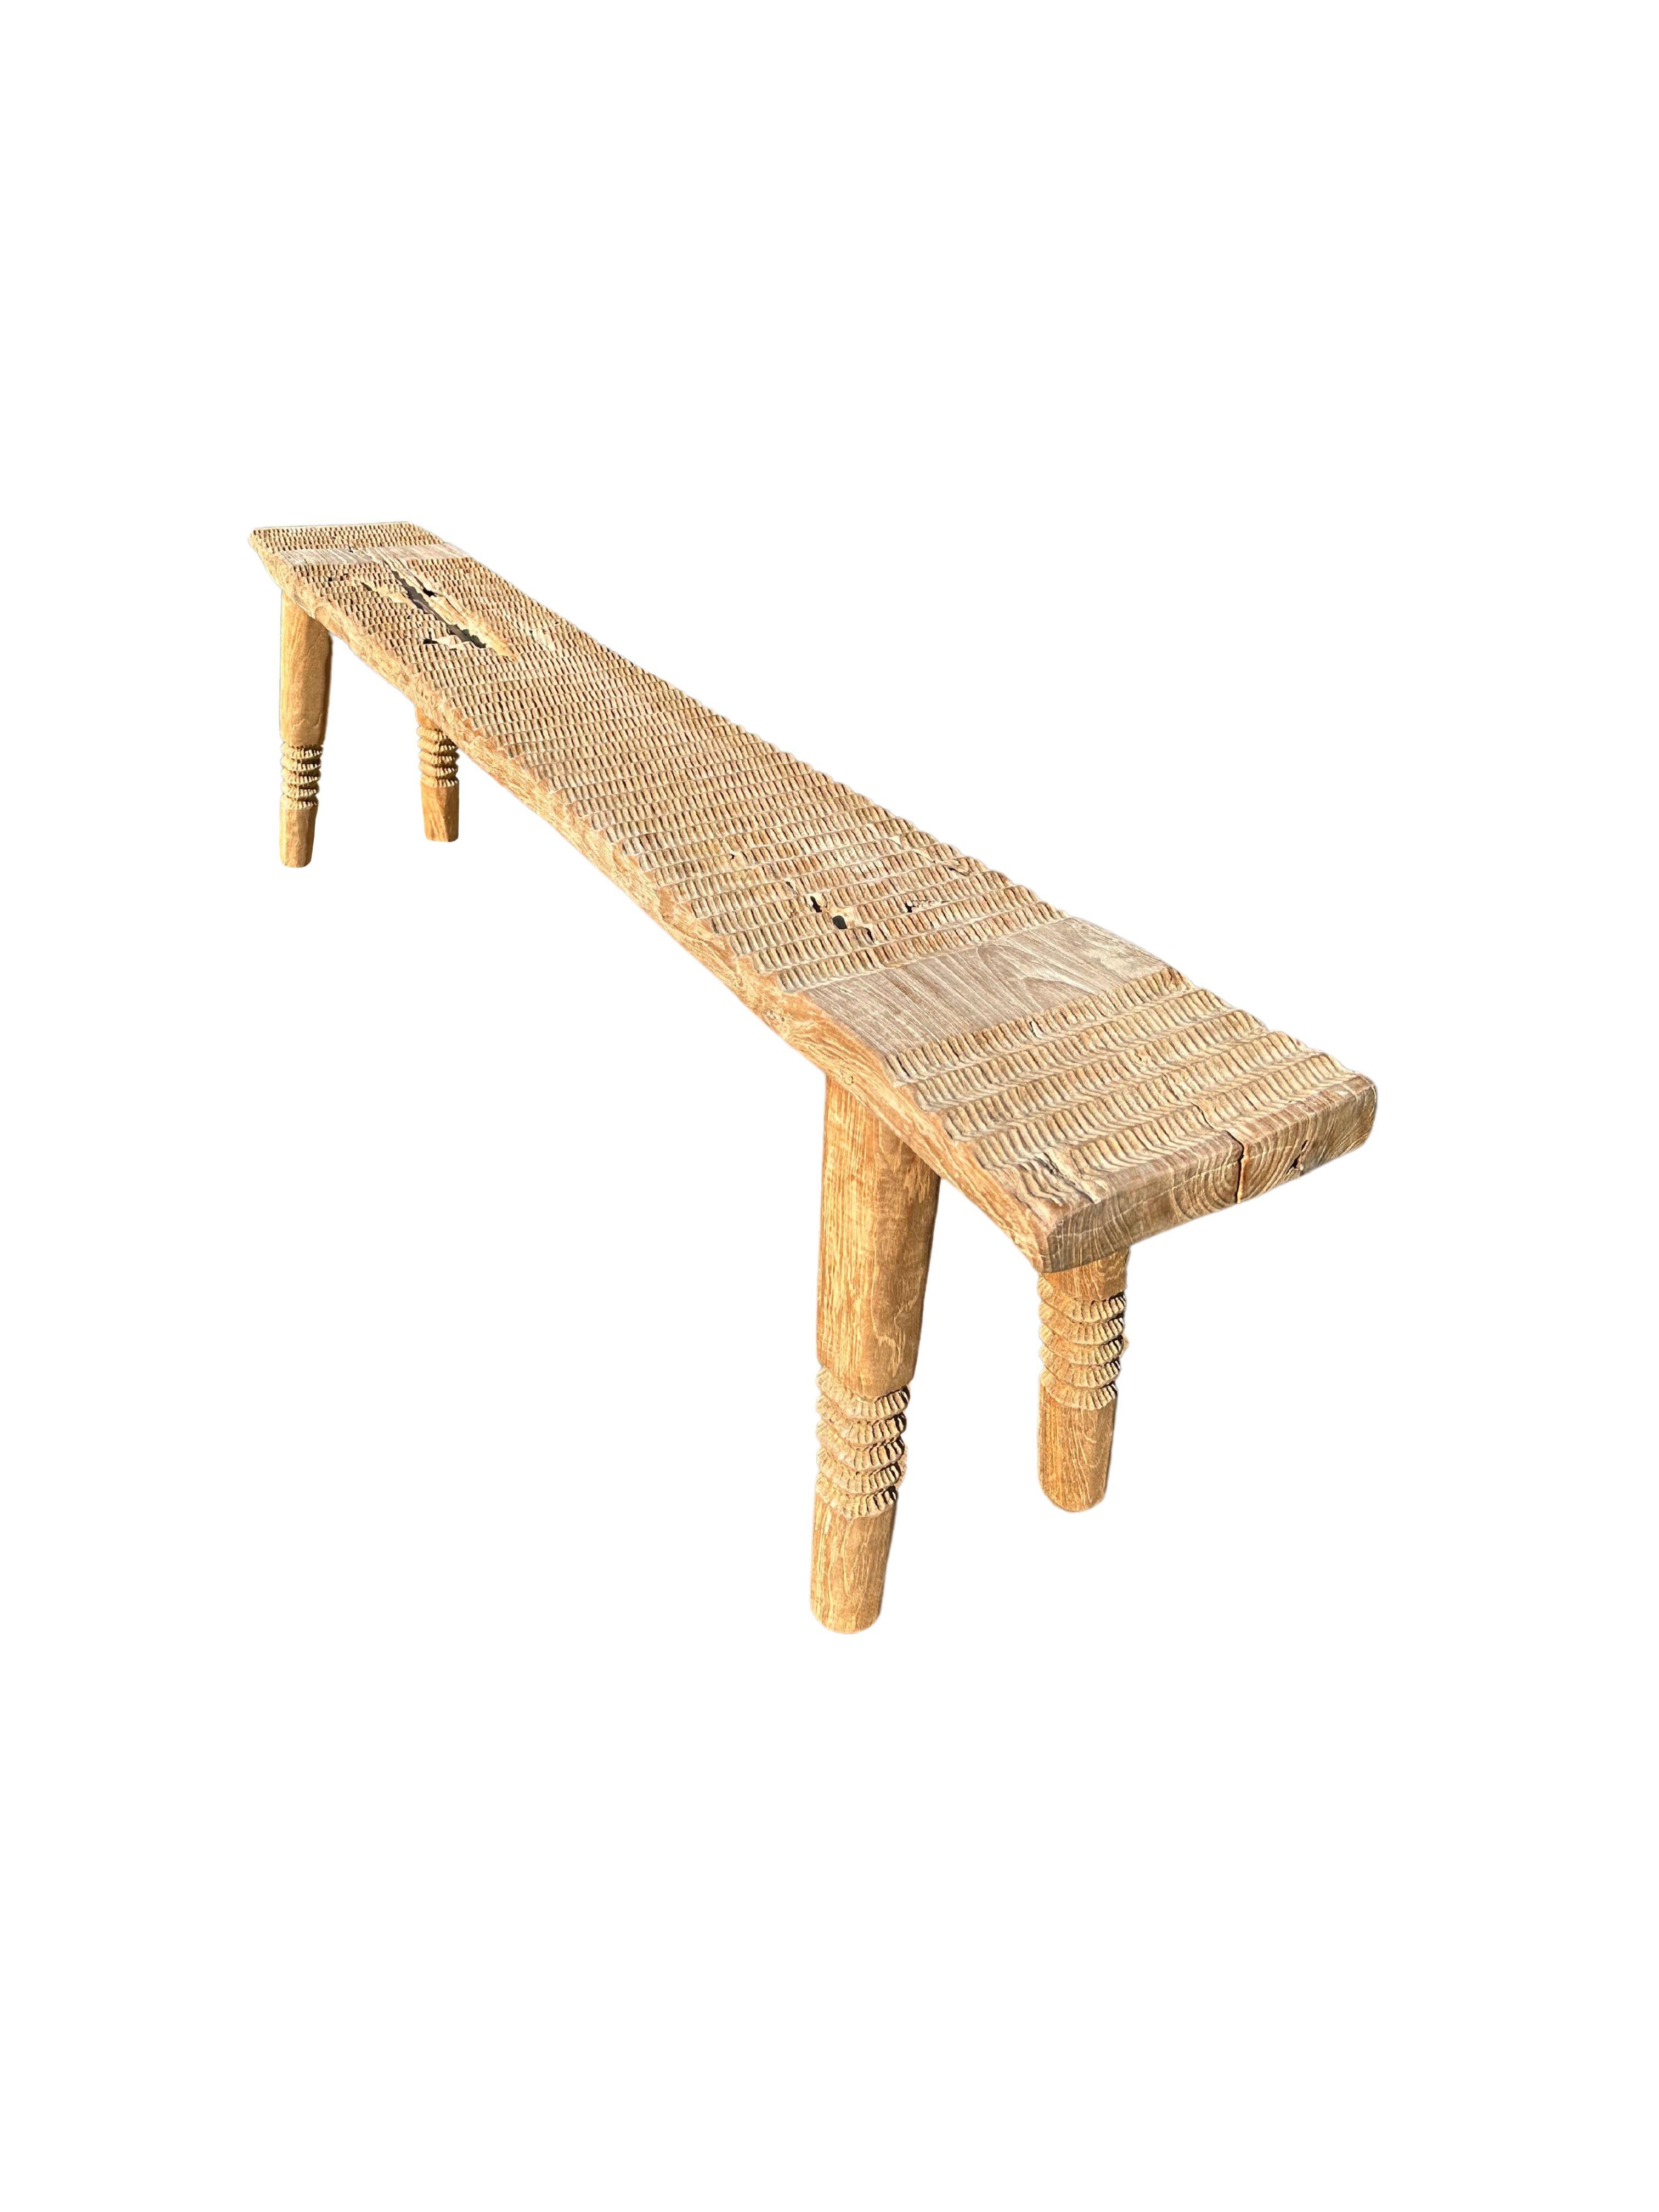 Other Teak Wood Sculptural Bench, Carved Detailing, Modern Organic For Sale